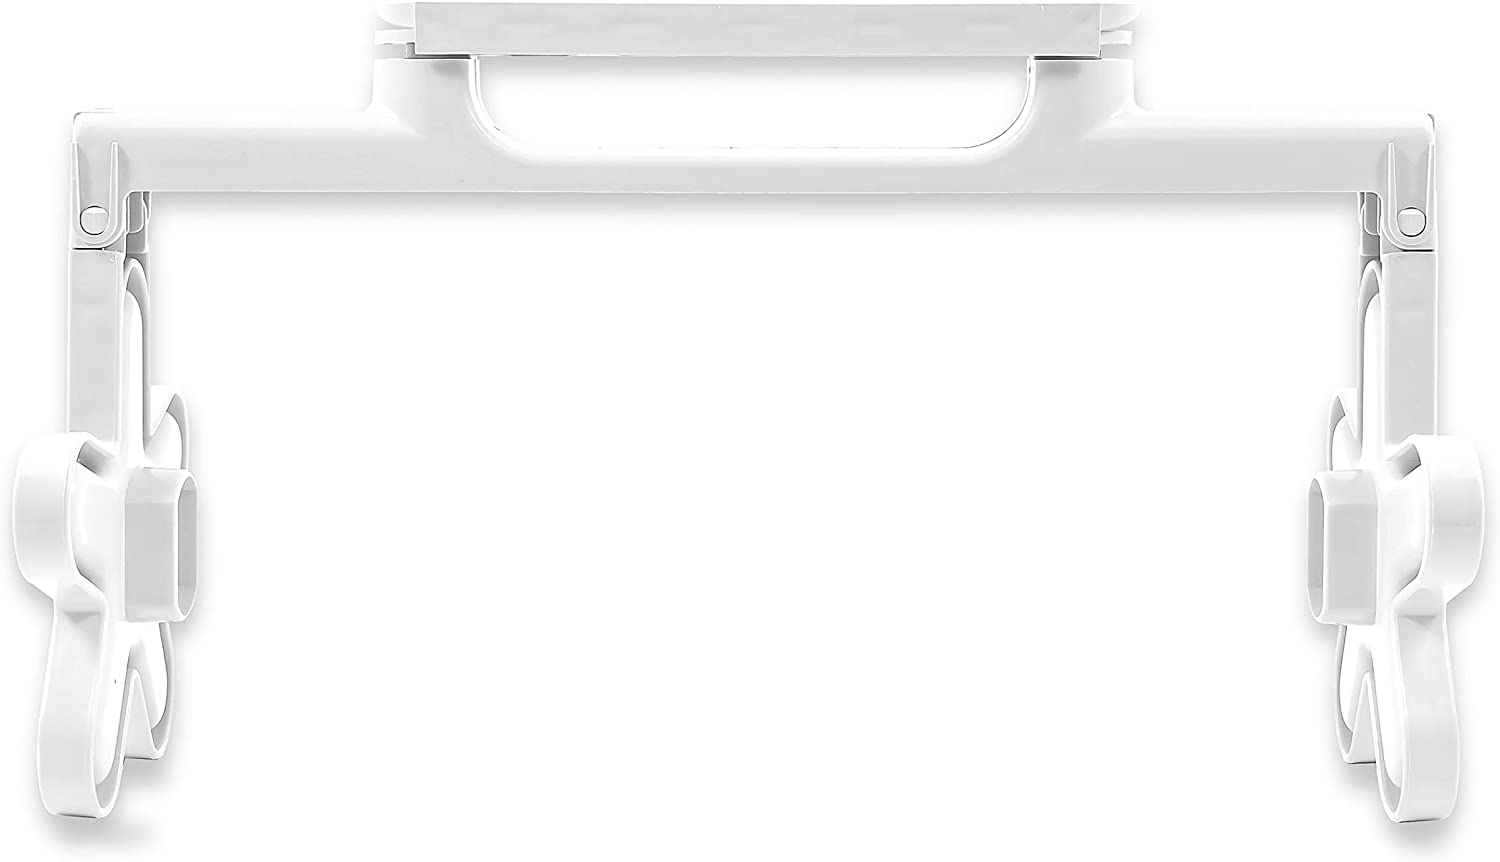 Pop-A-Plate Paper Plate Dispenser 57001